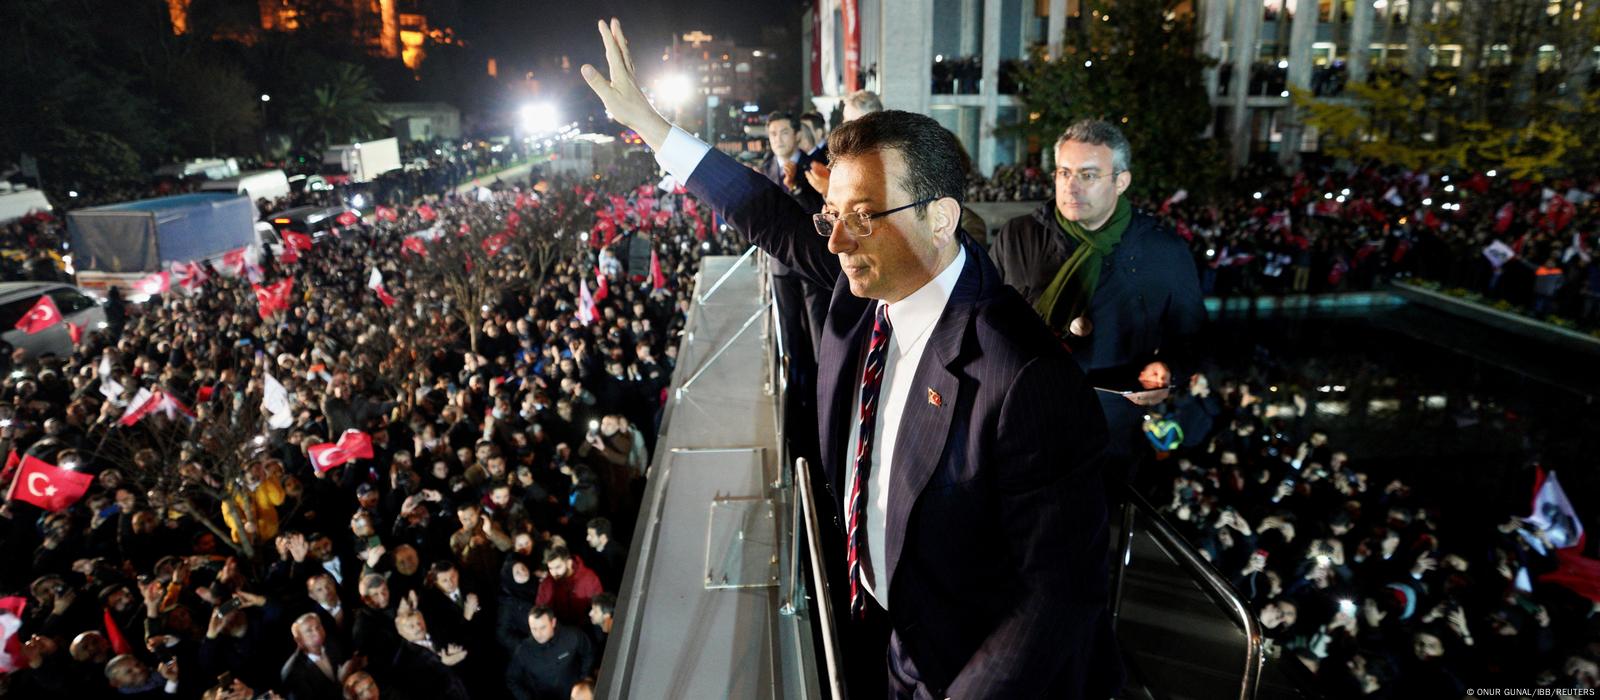 Primarul Istanbulului Ekrem Imamoglu își salută susținătorii în timp ce aceștia se adună în fața biroului său